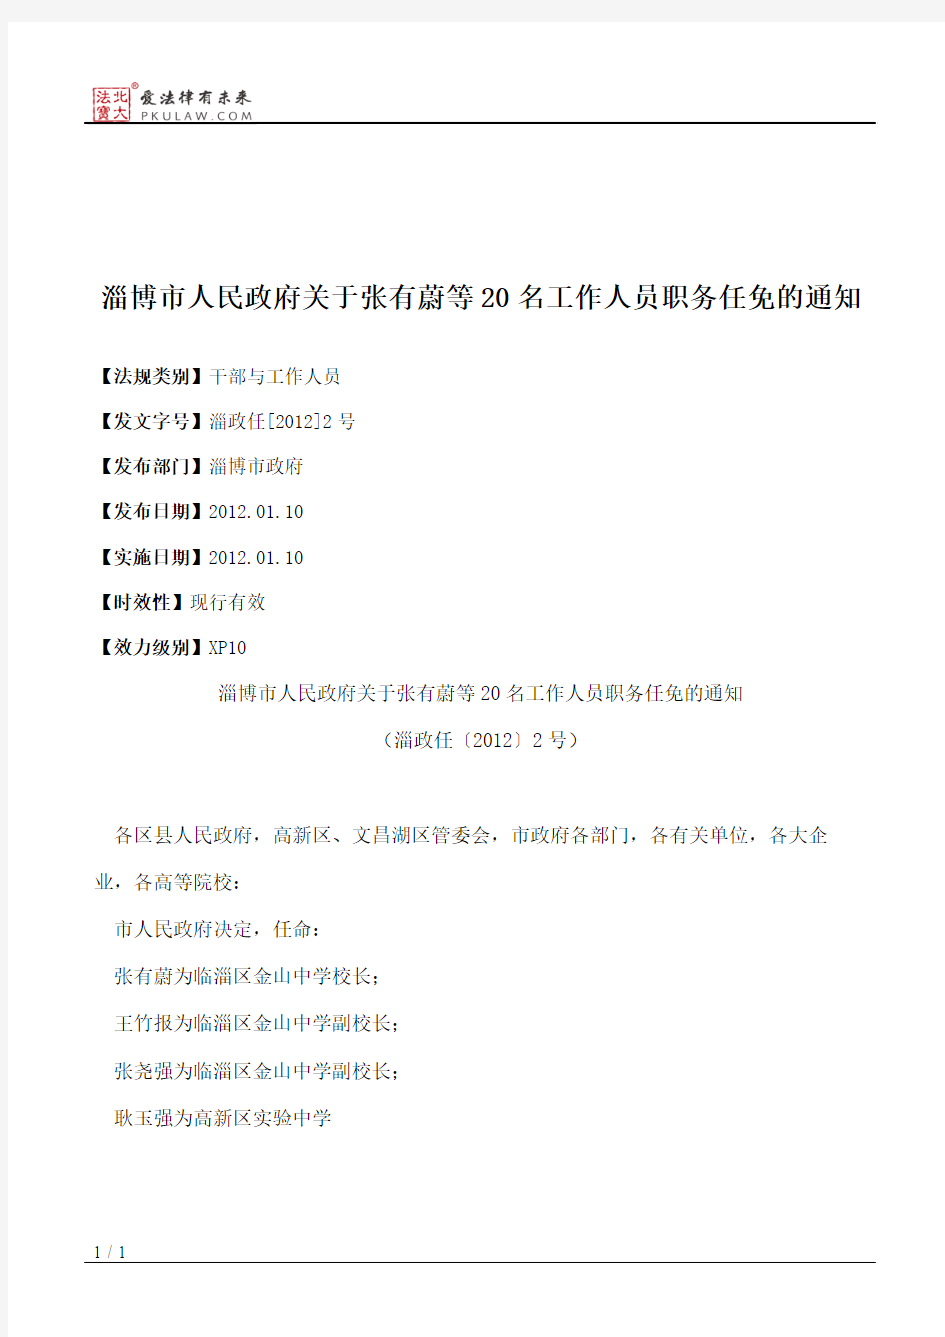 淄博市人民政府关于张有蔚等20名工作人员职务任免的通知